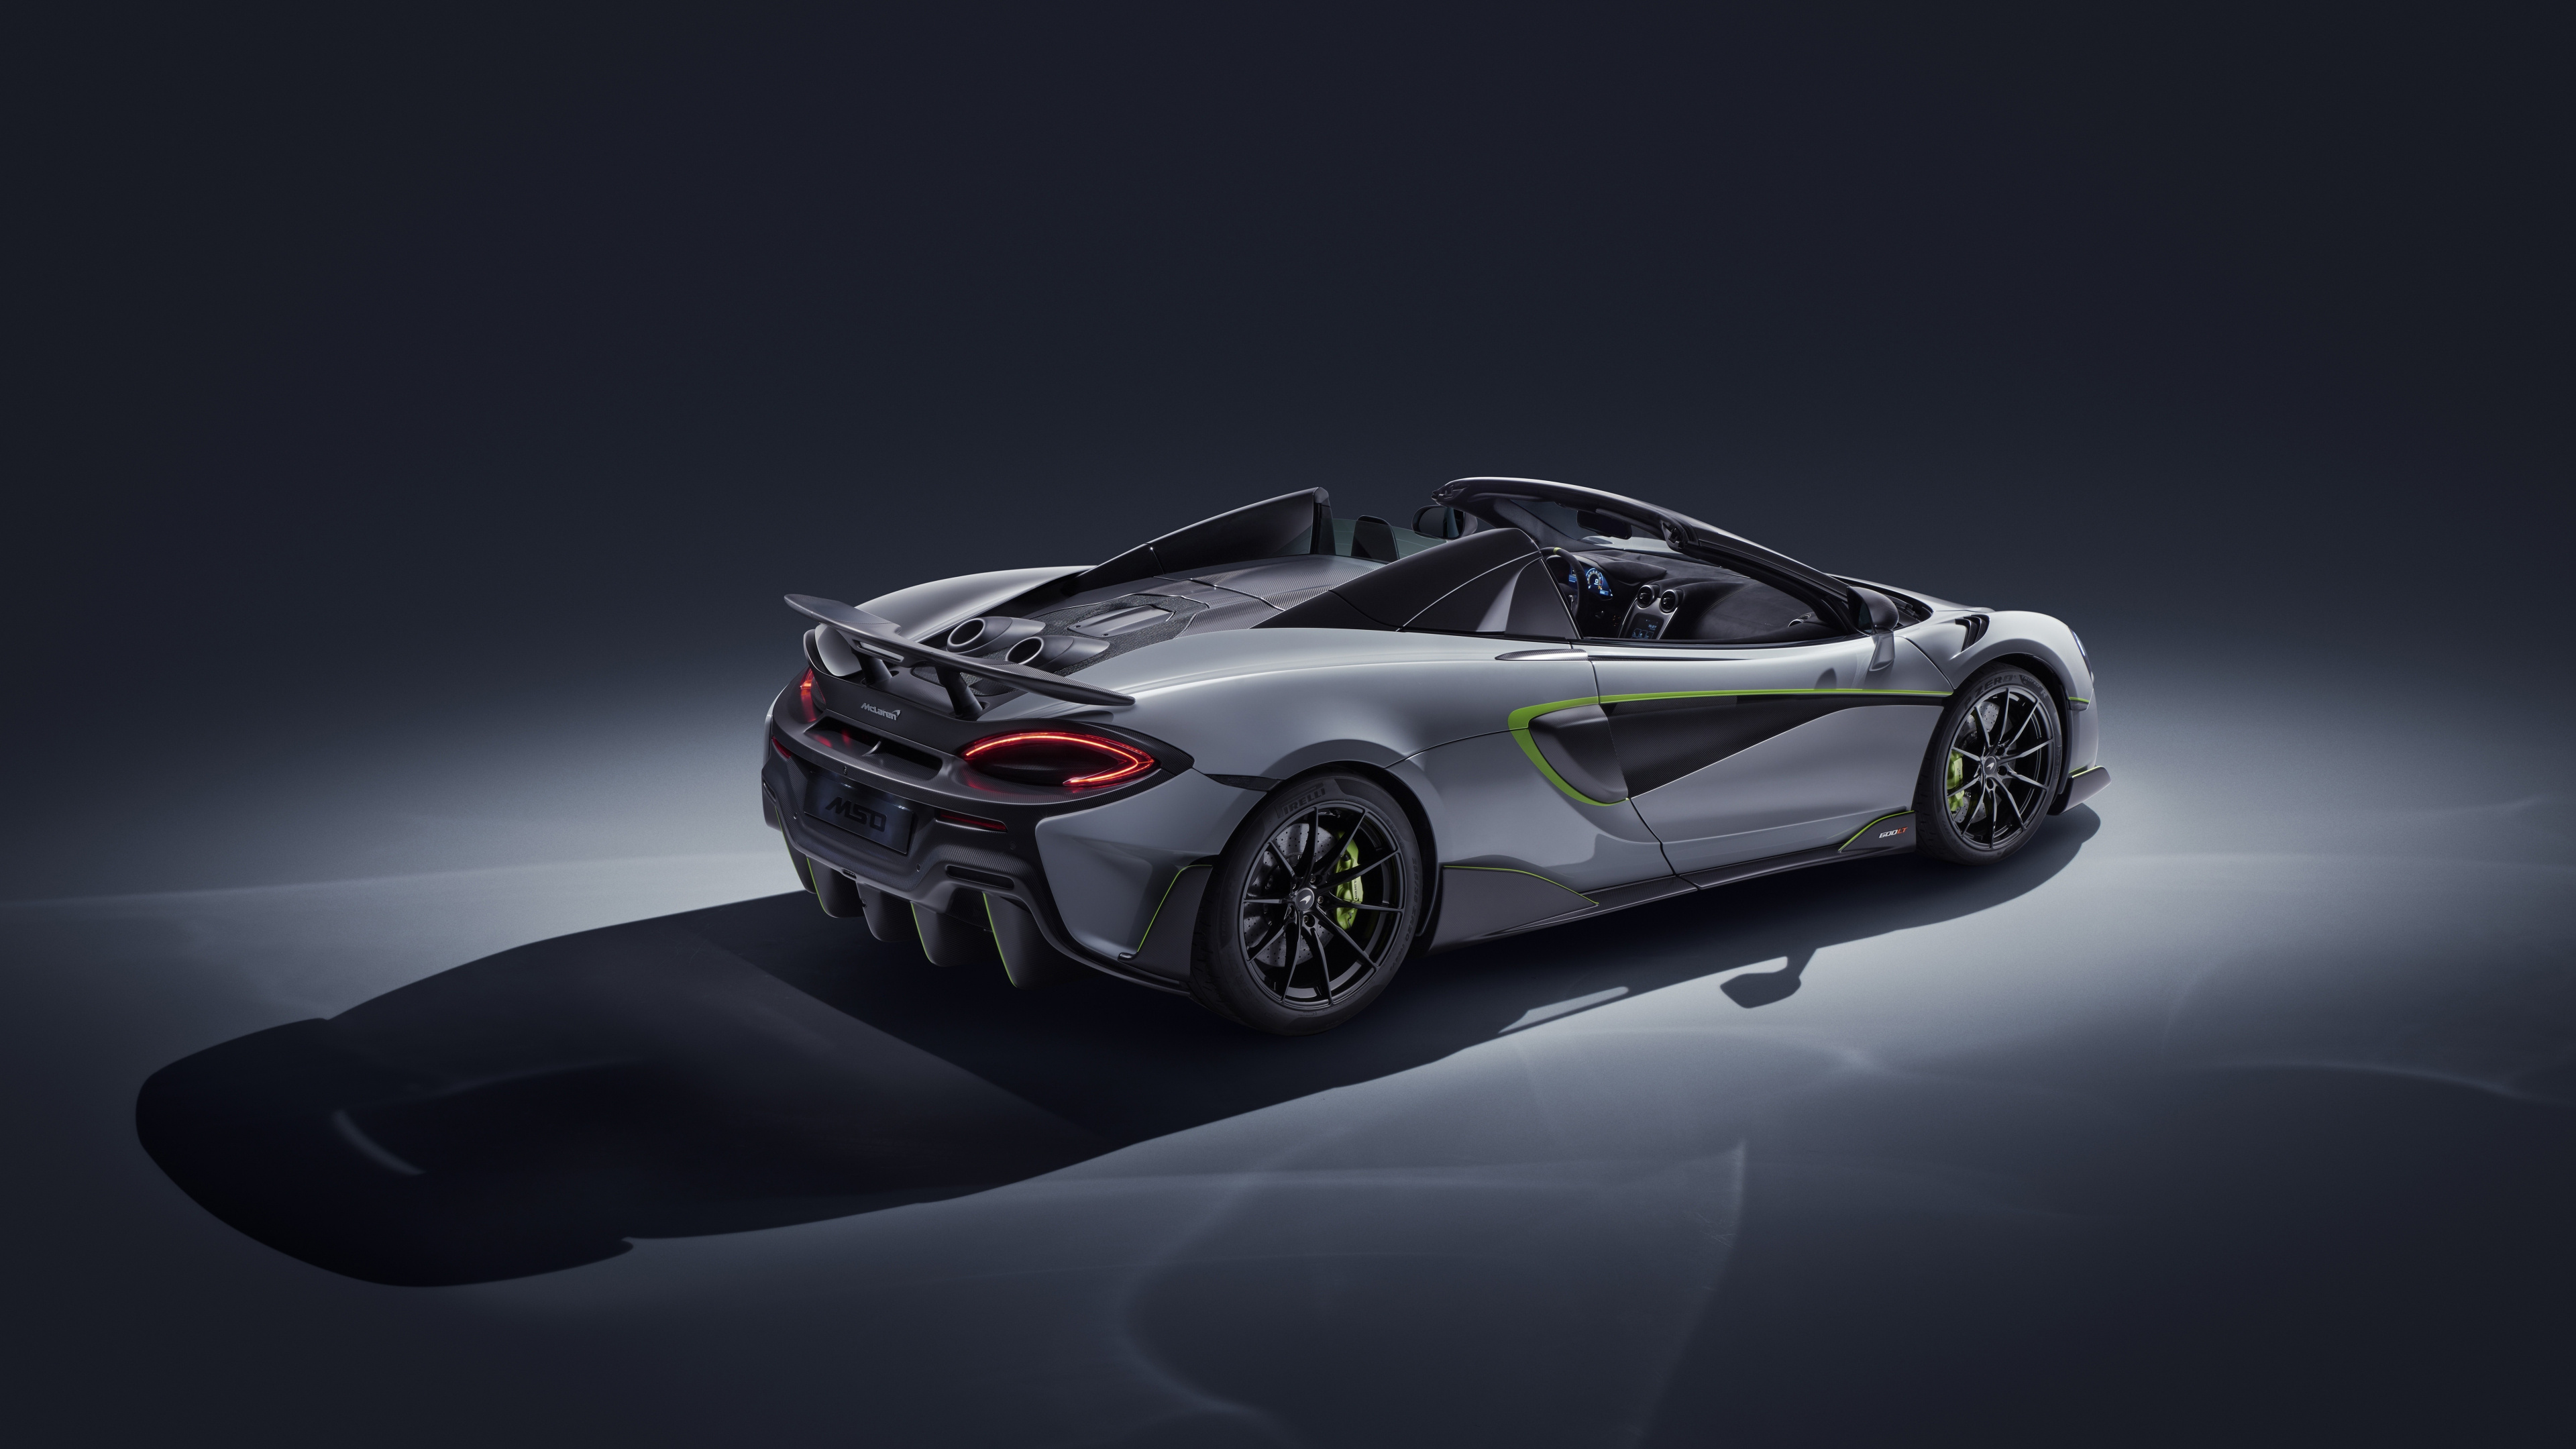 McLaren 600LT, Rear view beauty, 4K wallpaper, High-definition imagery, 3840x2160 4K Desktop